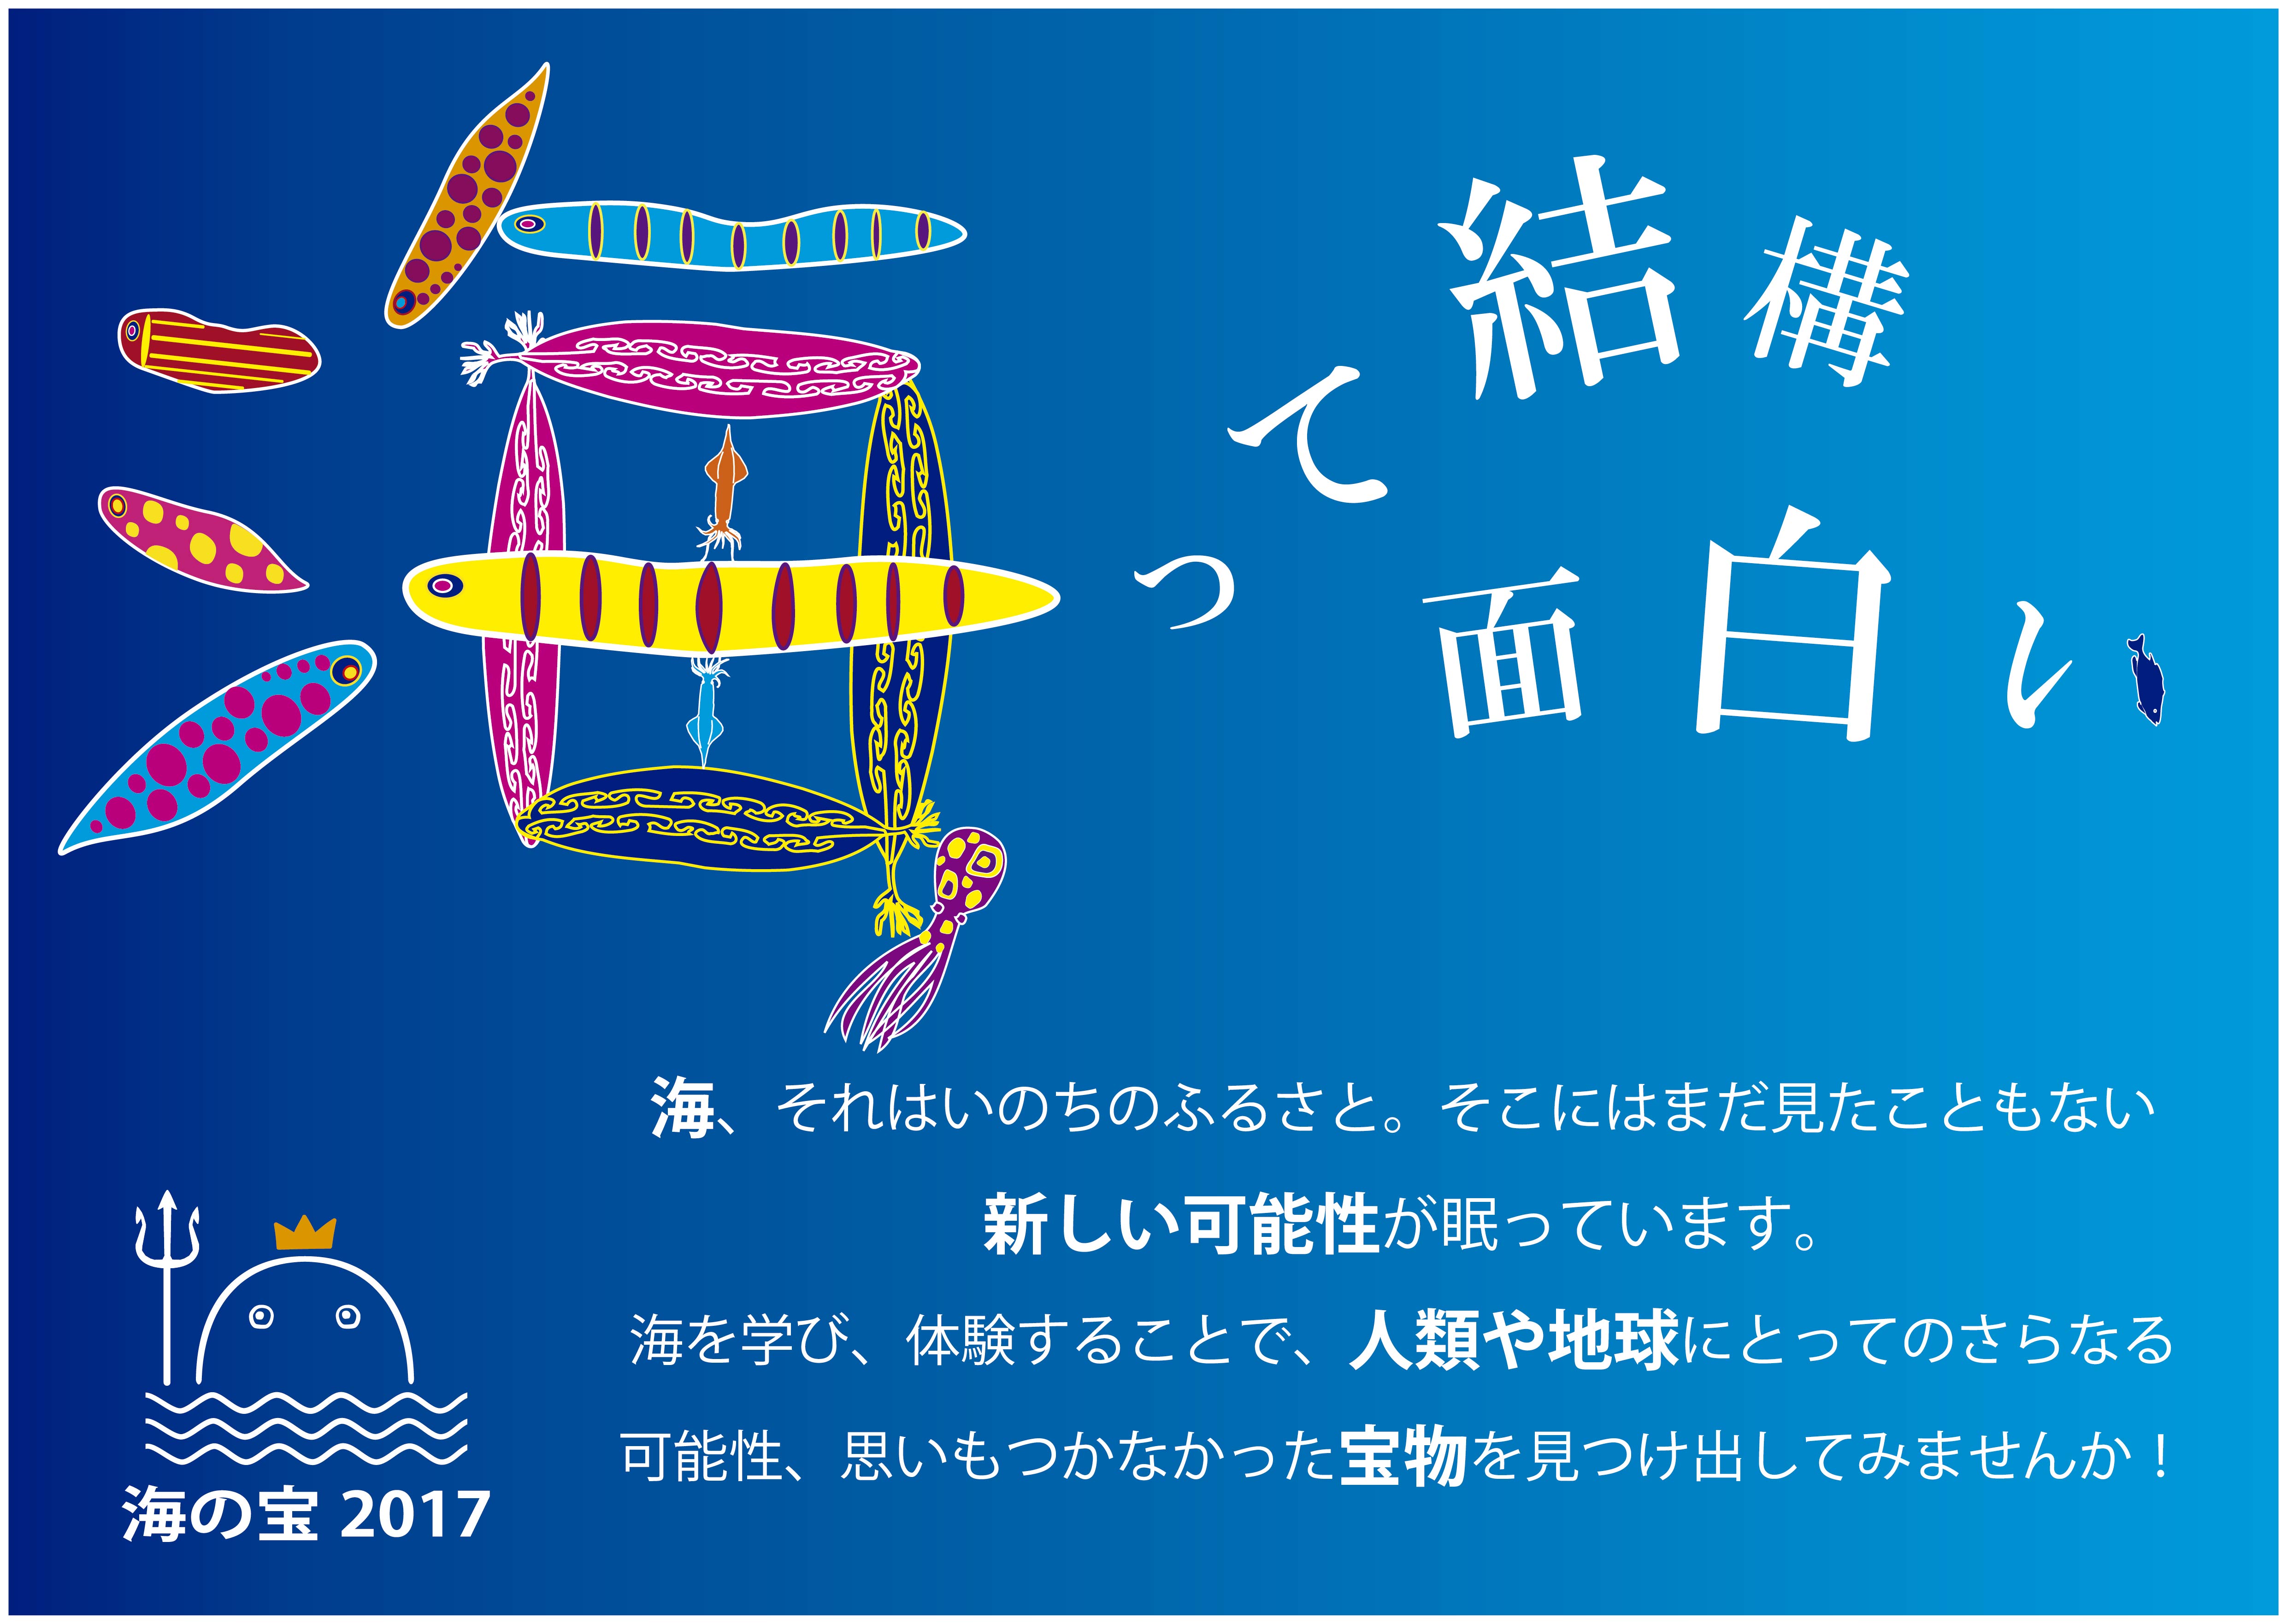 全国の中学生 高校生対象 海の宝 アカデミックコンテスト 2017 応募開始 海と日本project 日本財団